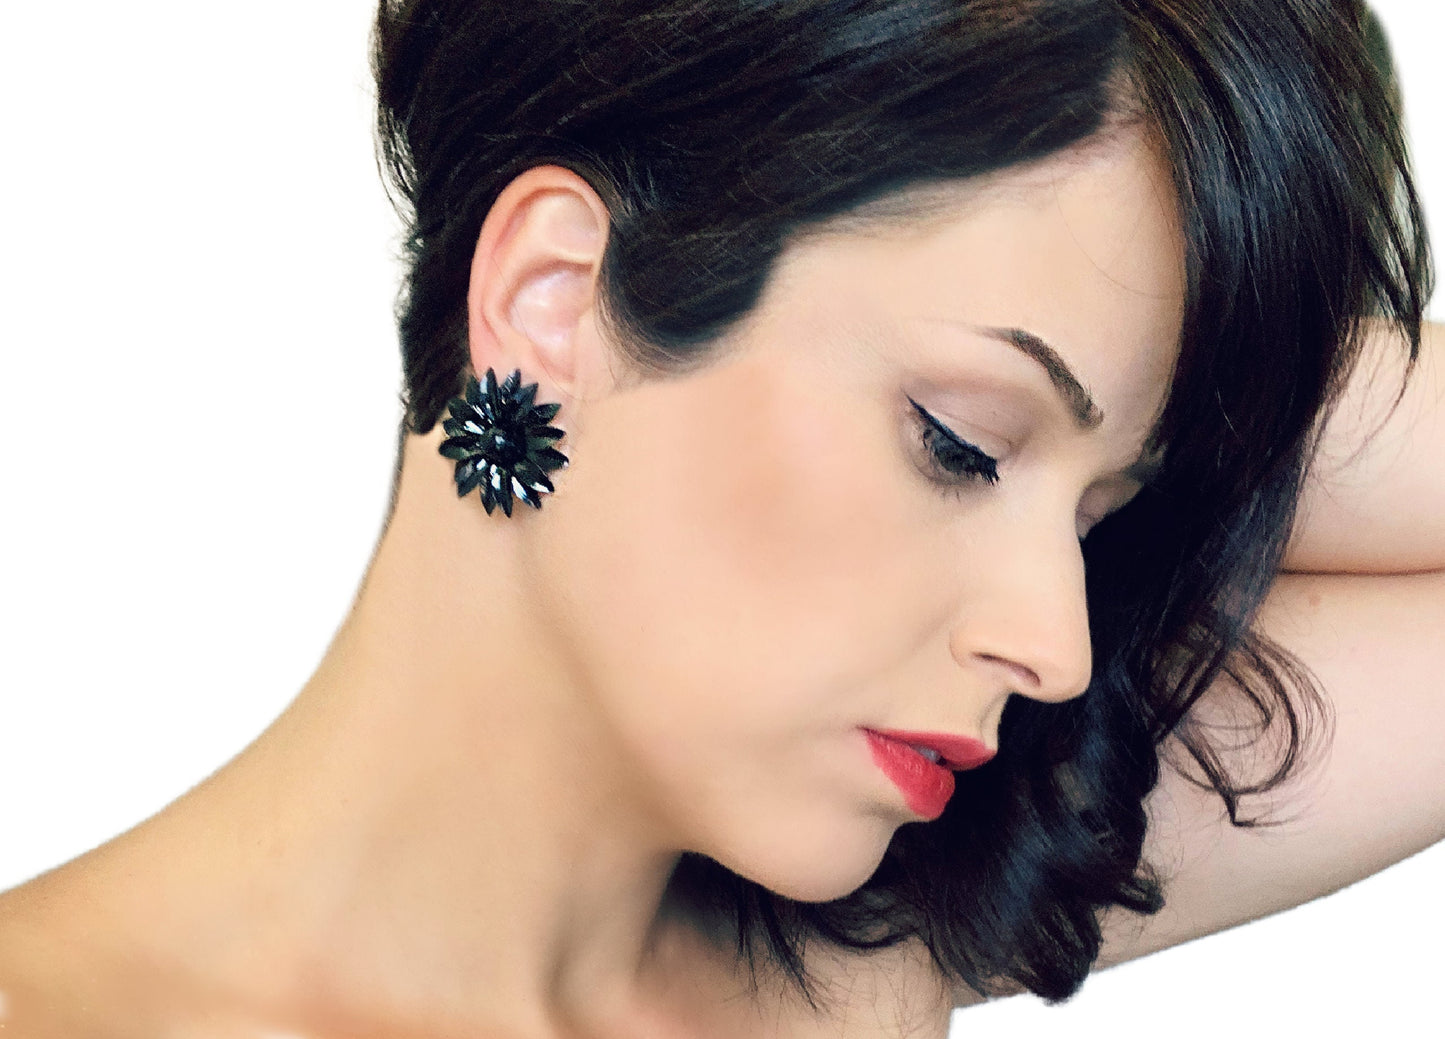 Vintage Black Flower Earrings, Black Enamel Clip-On Statement Earrings, Mod Pop Retro Style, Big Black Earrings, Oversized Vintage Earrings